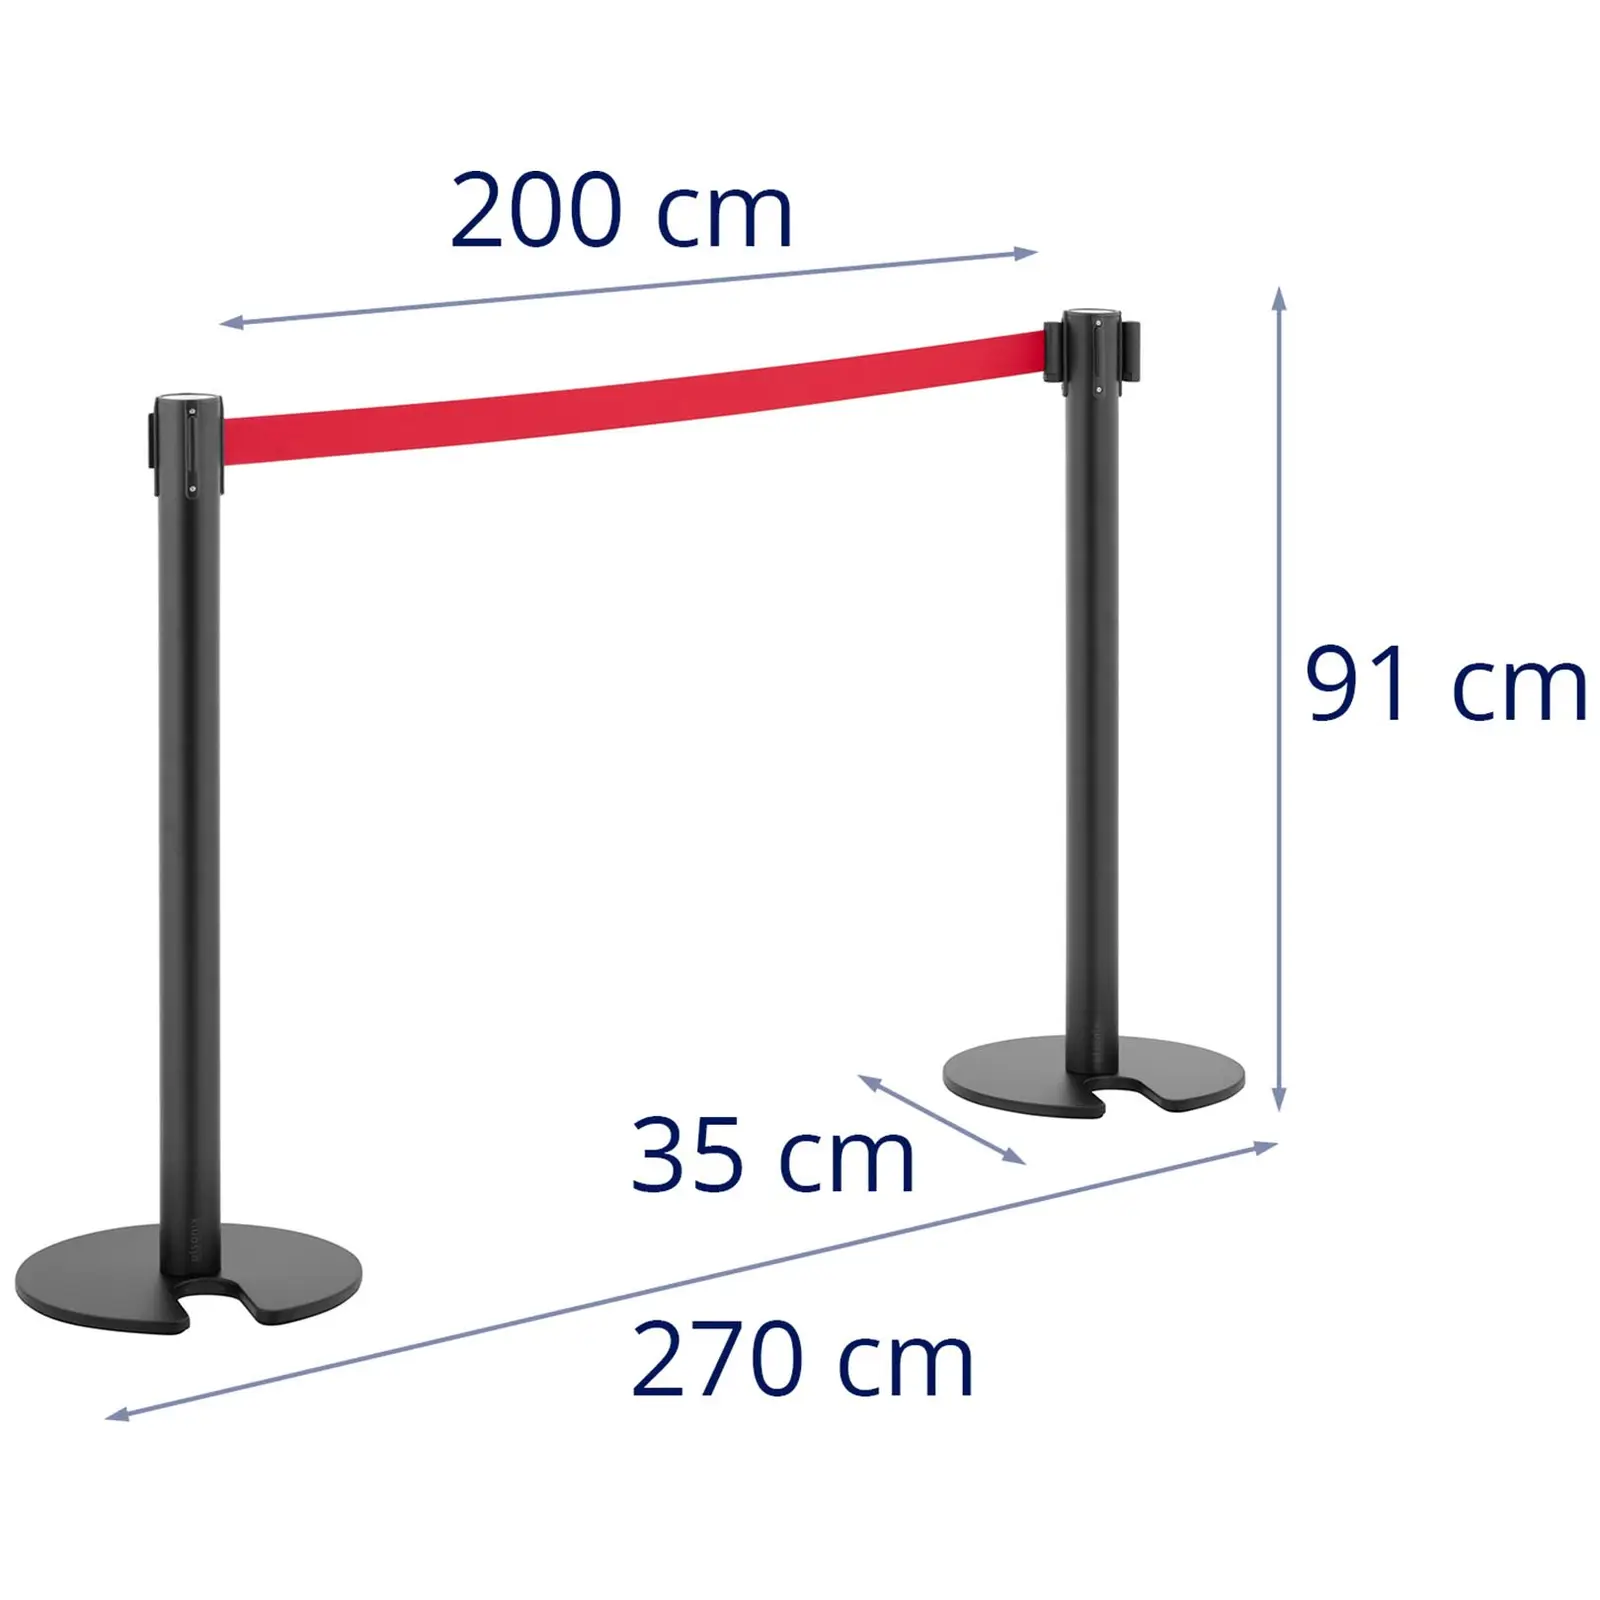 2 postes para barrera de protección - 200 cm - revestimiento negro - base con hueco